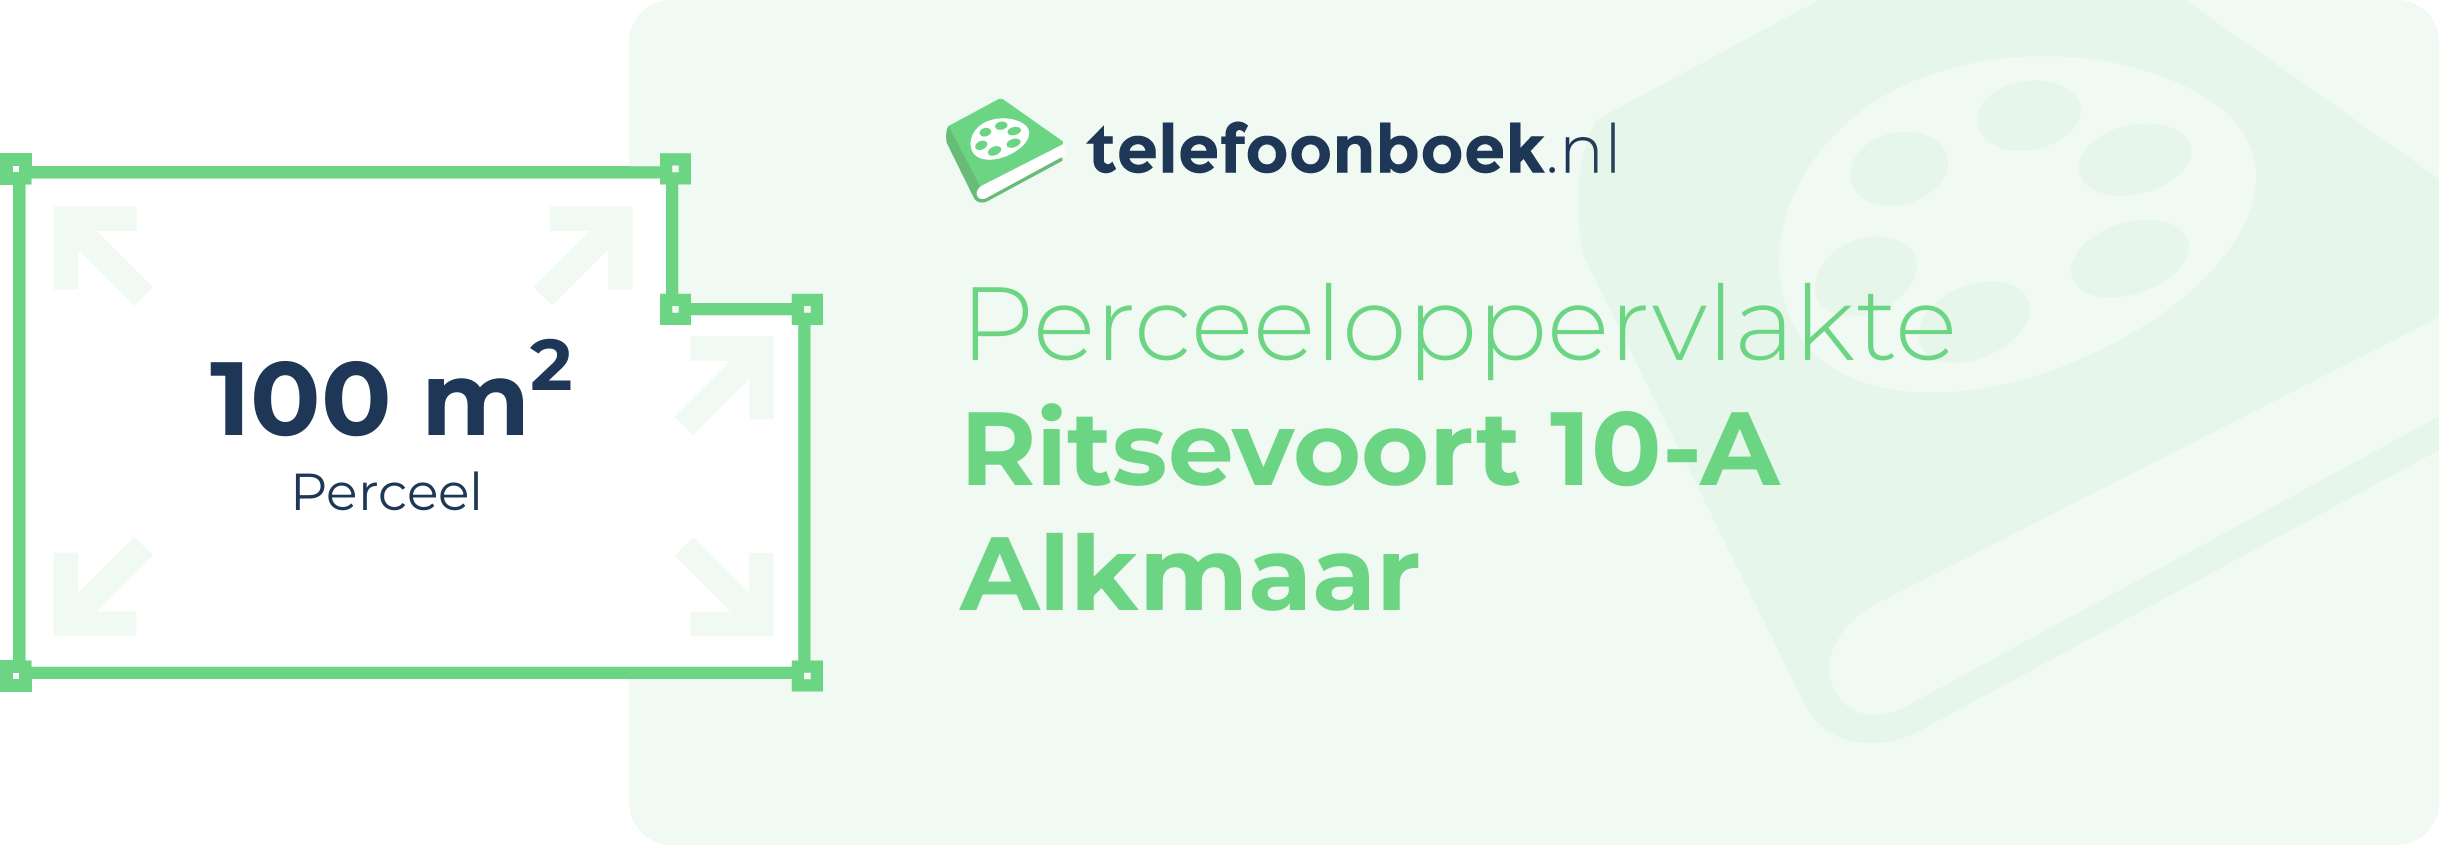 Perceeloppervlakte Ritsevoort 10-A Alkmaar